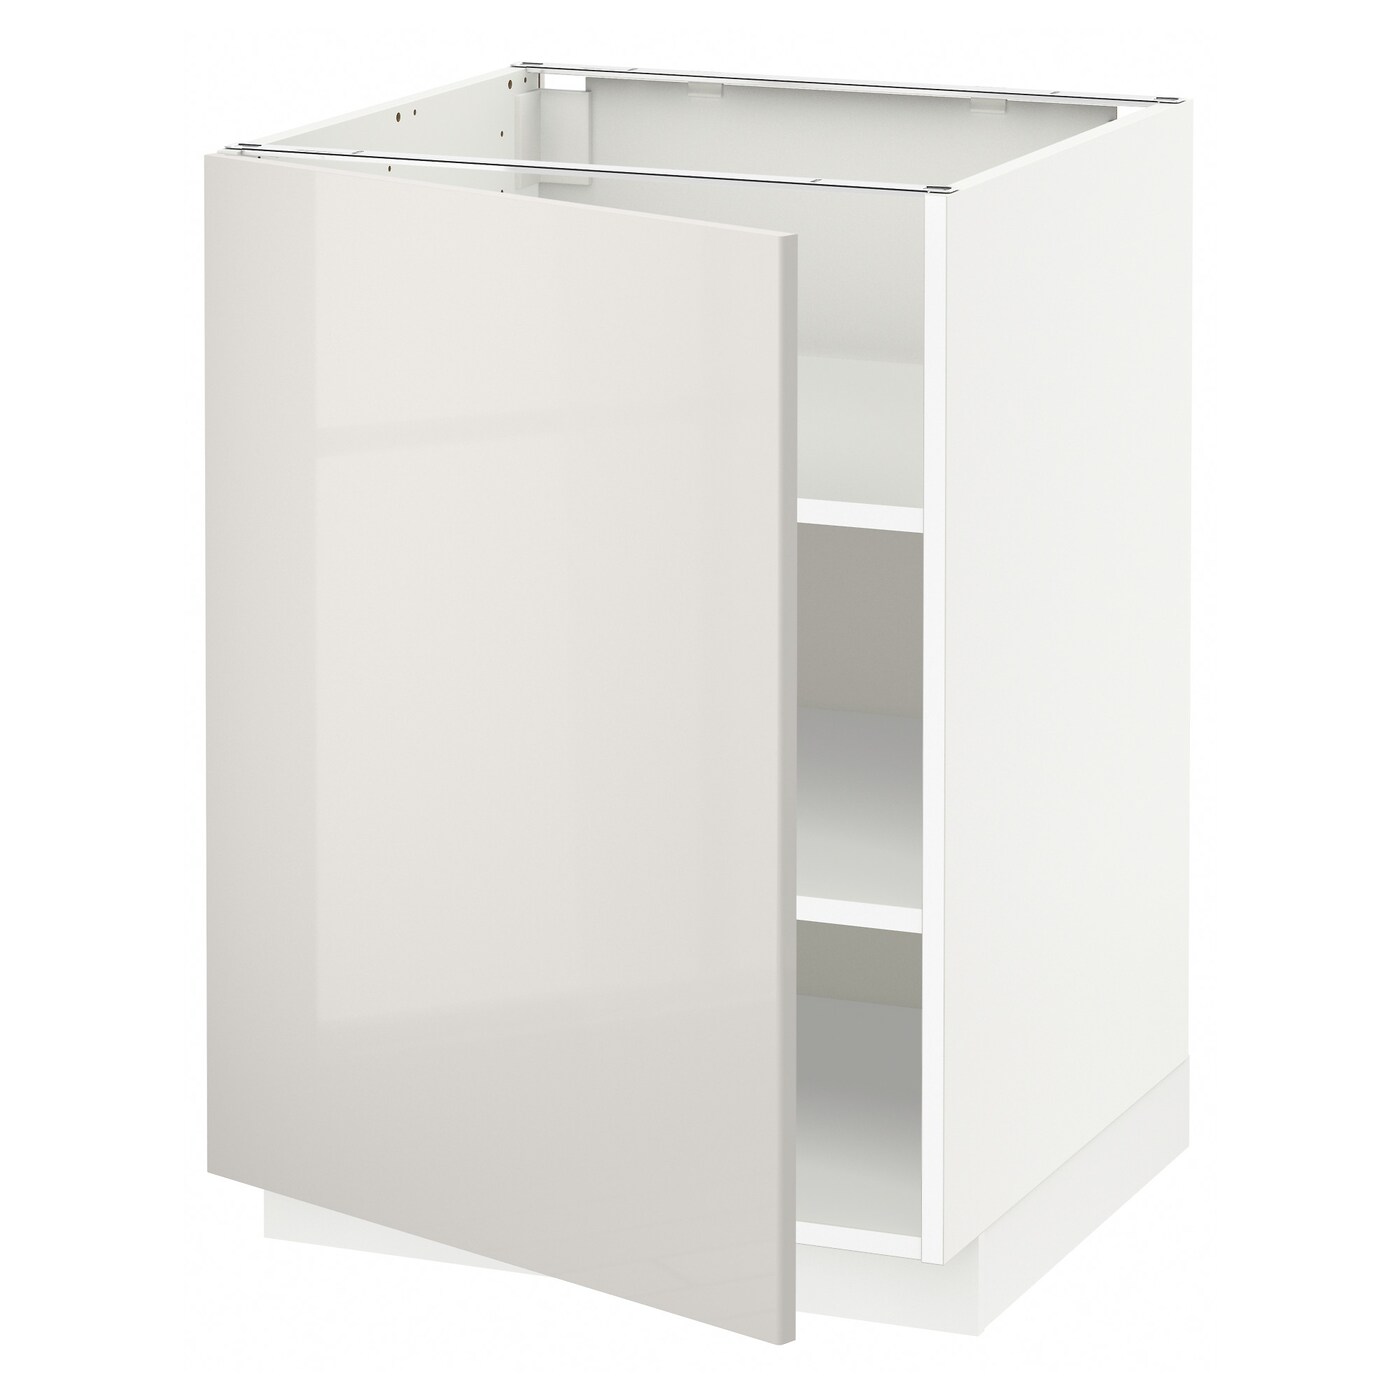 Напольный шкаф - IKEA METOD, 88x62x60см, белый/светло-серый, МЕТОД ИКЕА